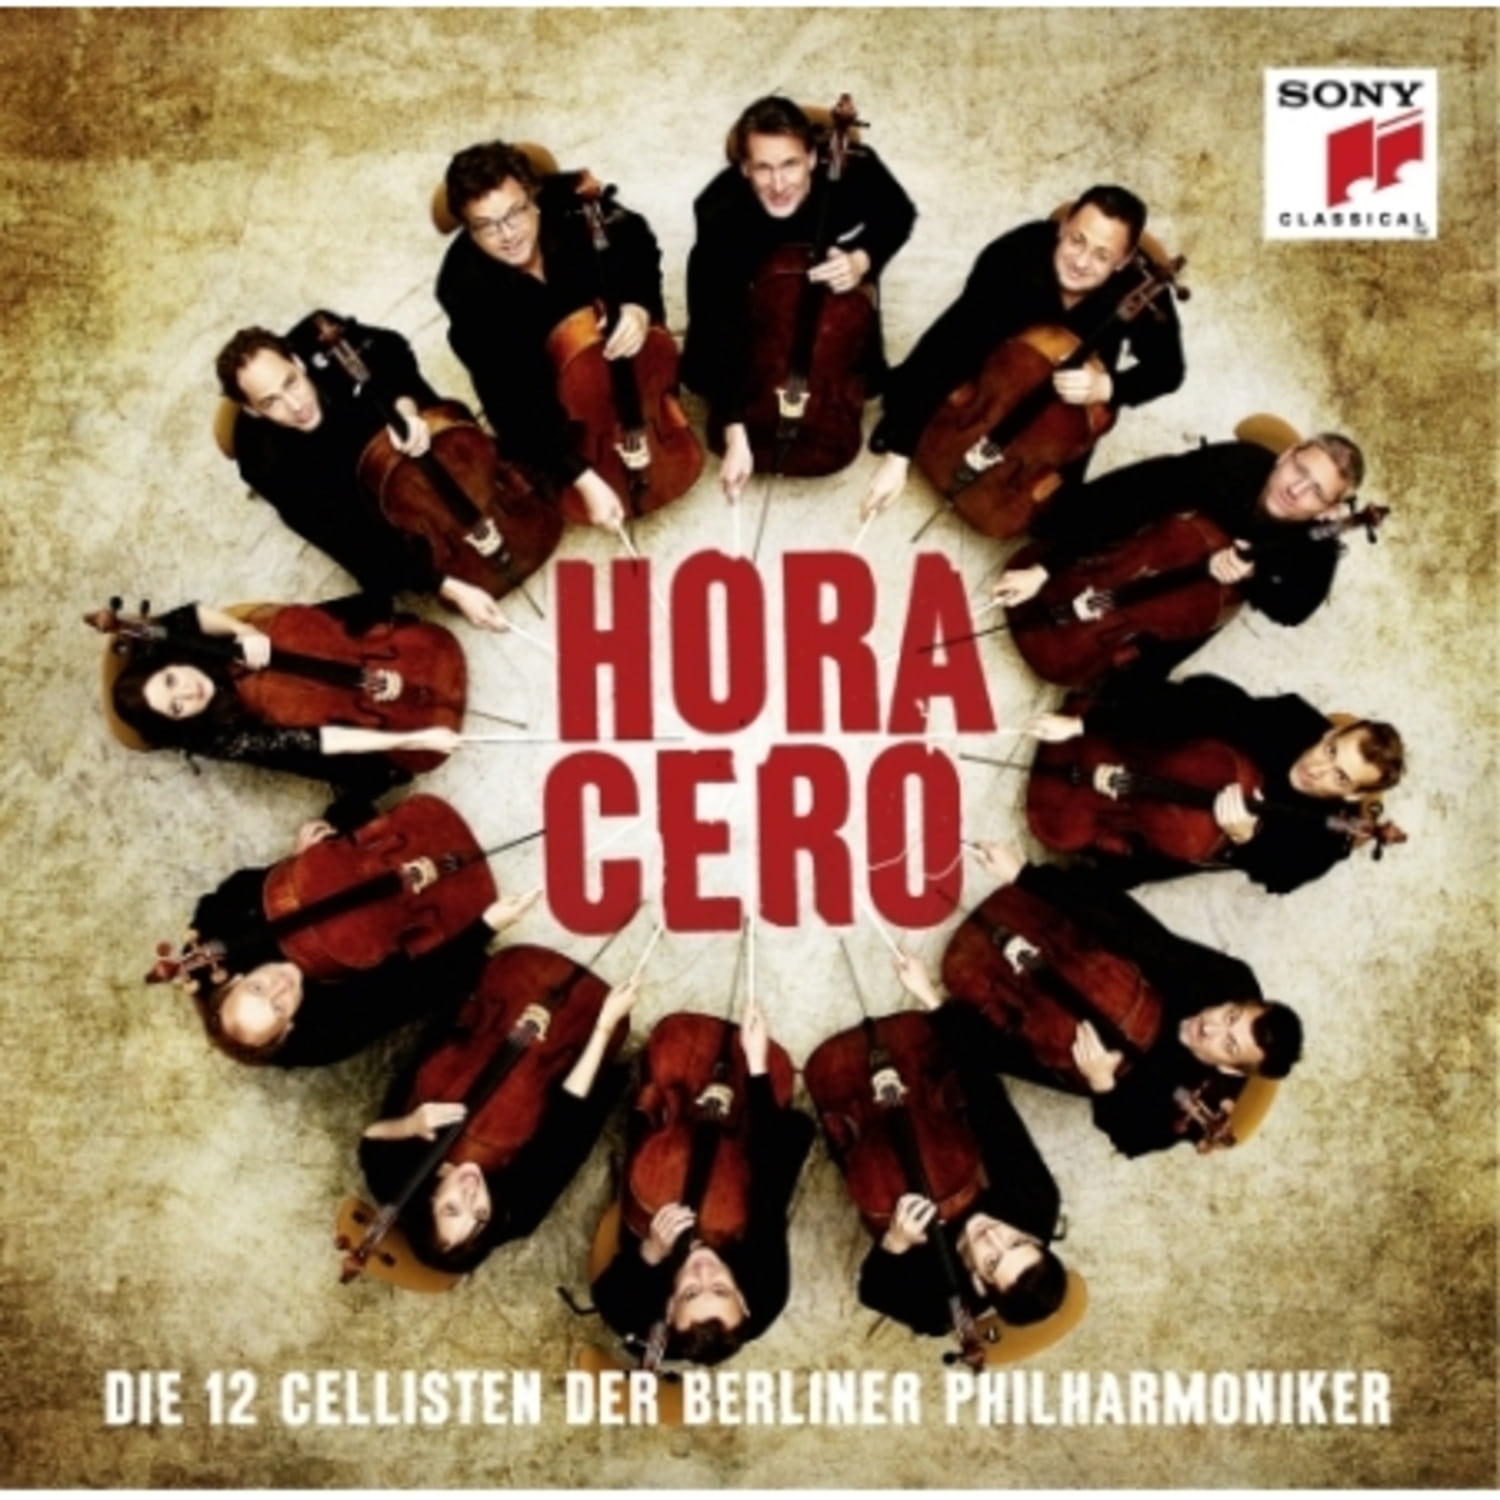 Die 12 Cellisten Der Berliner Philharmoniker (베를린 필 12첼리스트) - Hora Cero